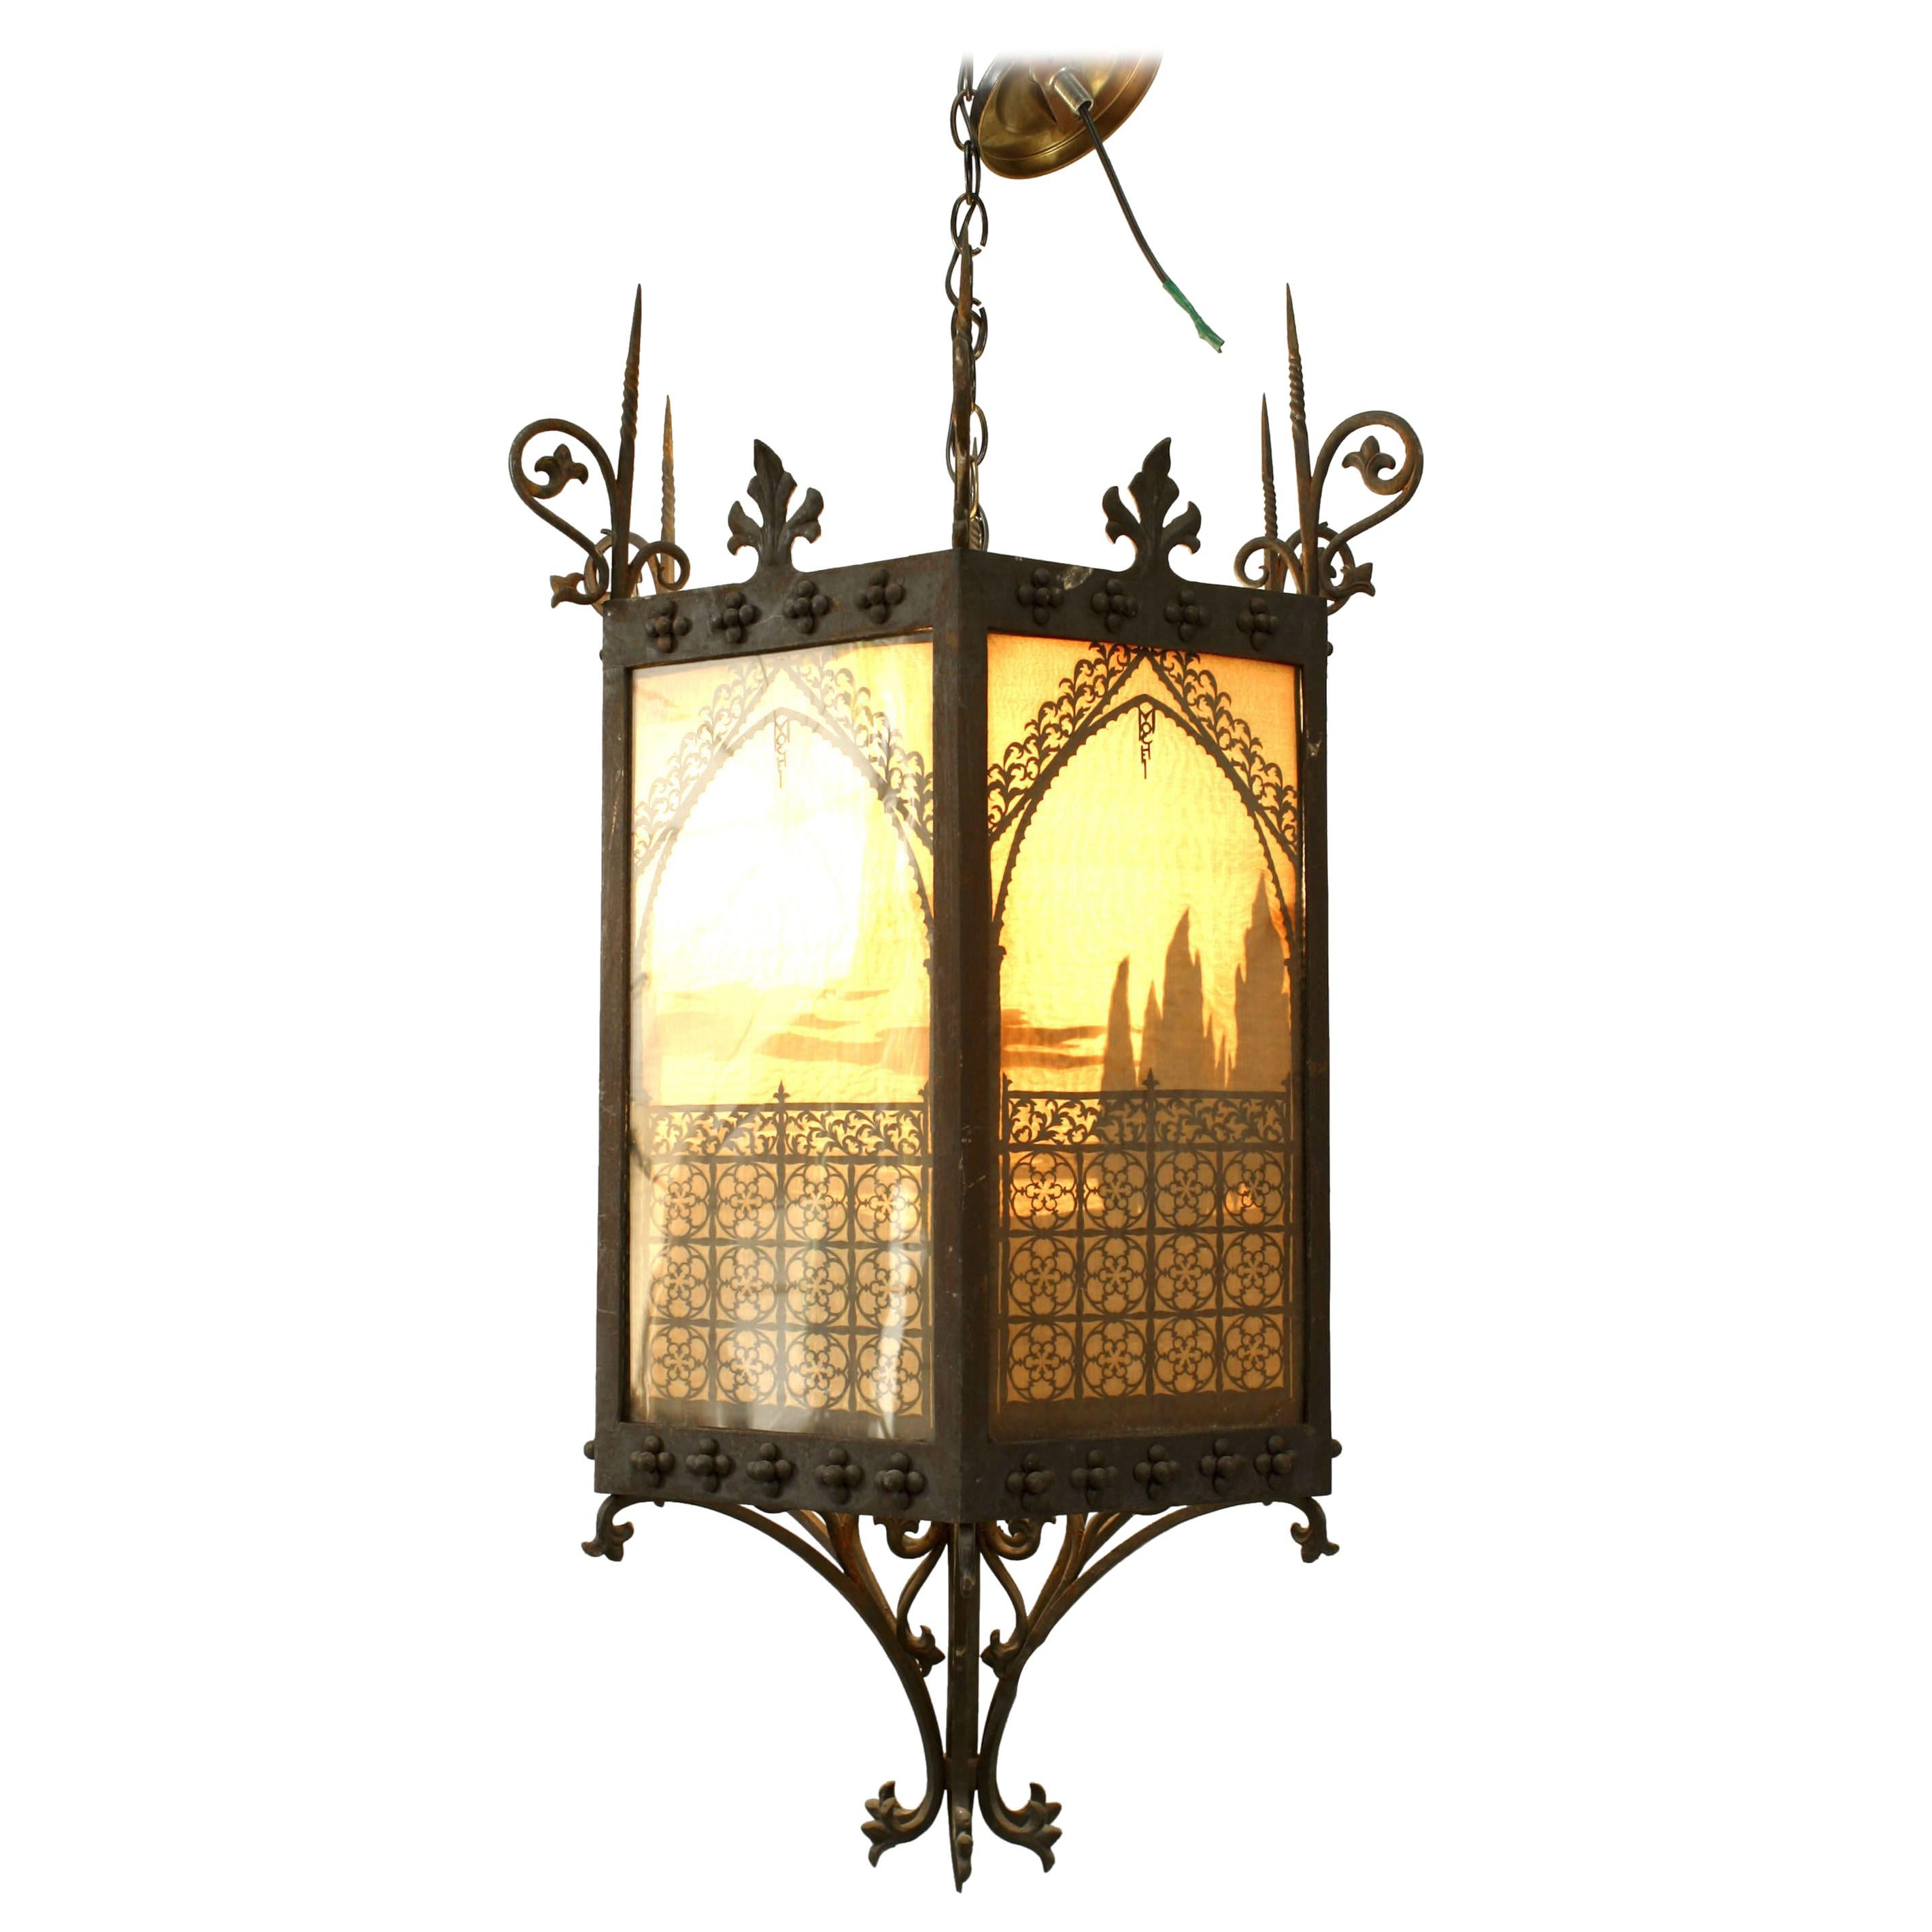 2 lanternes suspendues italiennes de style Renaissance en acier et verre